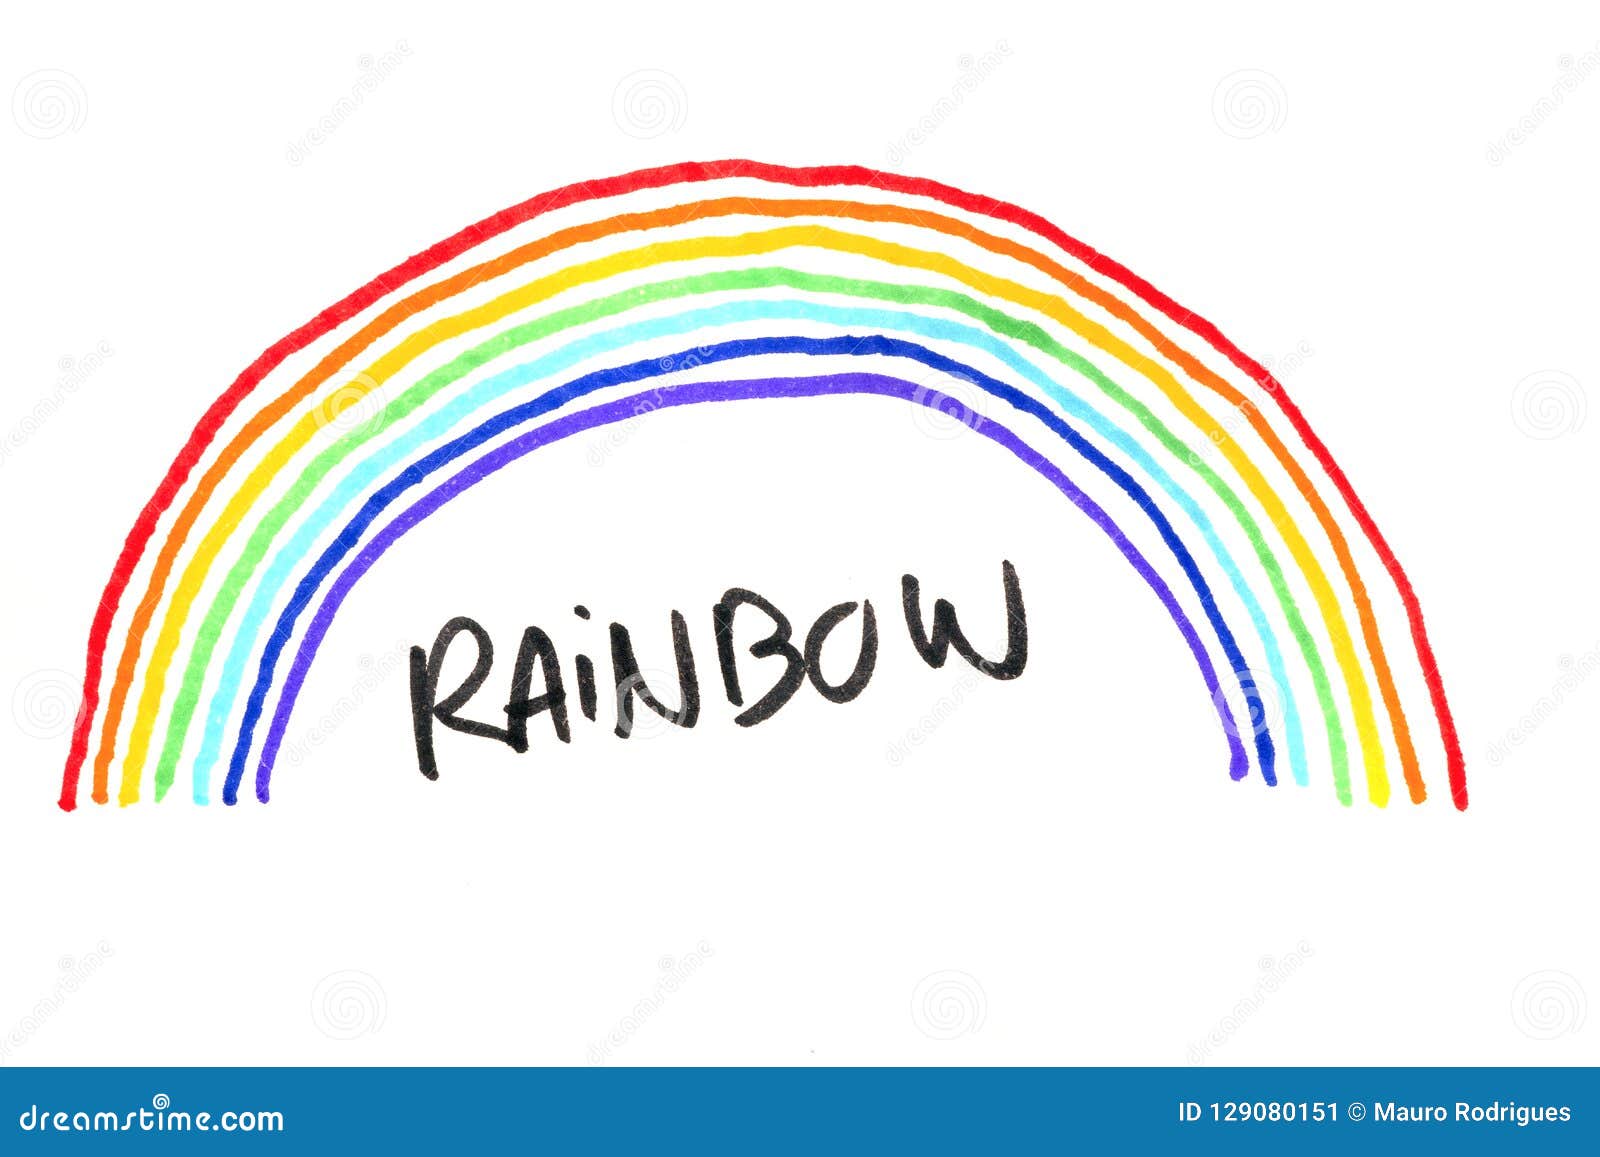 Regenbogen Gezeichnet Mit Filzstift Stockbild Bild Von Symbol Hintergrund 129080151